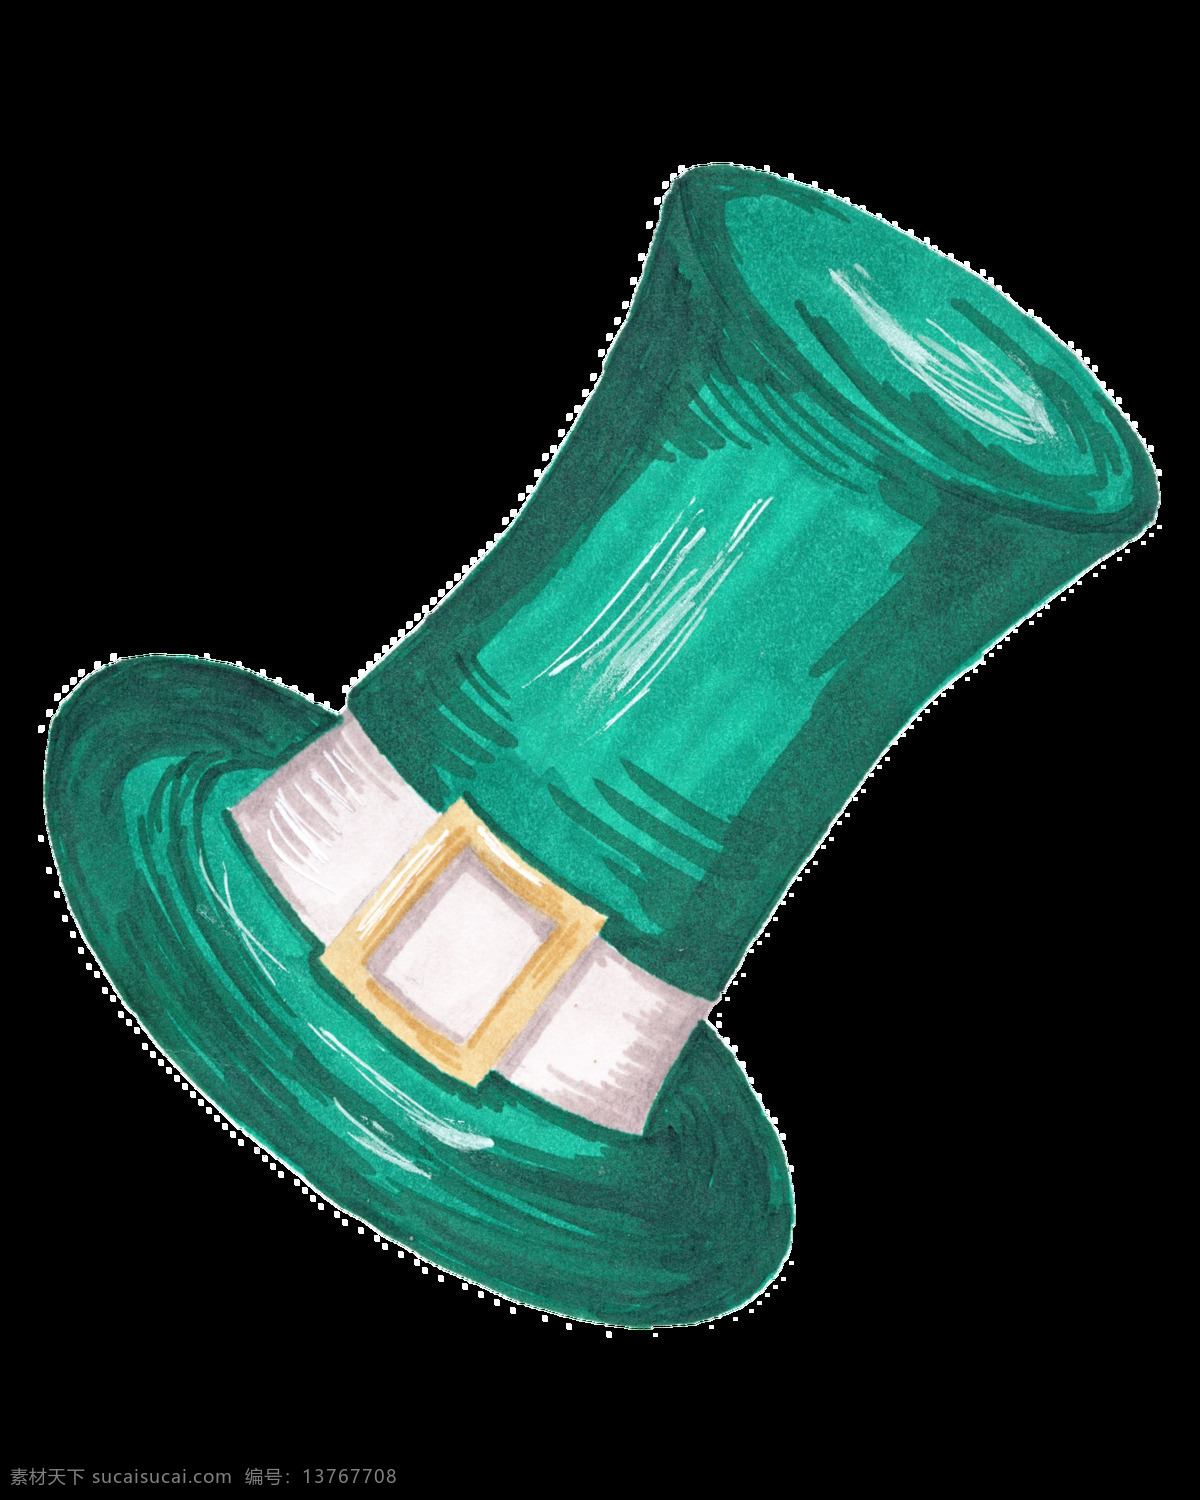 绿色 礼帽 透明 装饰 手绘 矢量素材 设计素材